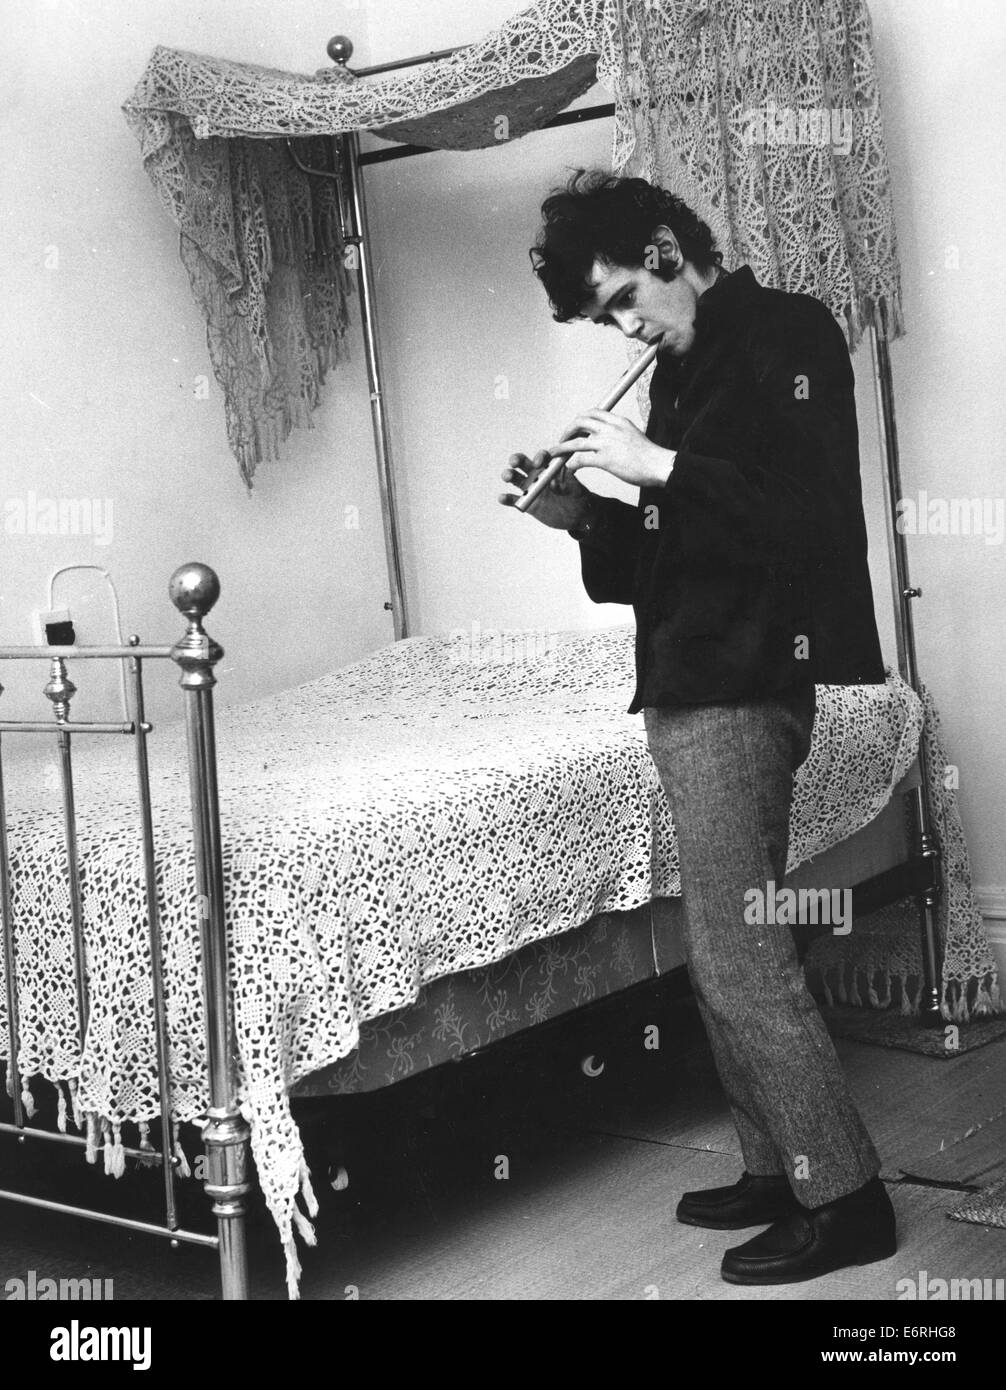 Londra, UK, UK. 2 Ottobre, 1970. DONOVAN (nato DONOVAN PHILIPS LEITCH, 10 maggio 1946) è un cantante scozzese, cantautore e chitarrista. Egli ha sviluppato un eclettico e stile distintivo che miscelati folk, jazz, pop, psichedelia, e world music (segnatamente calypso). Nella foto - Maida Vale, Paddington, Londra, Inghilterra - cantante musicista DONOVAN, 19, in un momento di relax a Maida Vale home giocando un folksy sintonizzarsi su un flauto di legno di strumento a fiato recorder accanto alla sua vittoriano letto in ottone con pizzo uncinetto tettoia. © Keystone foto/ZUMAPRESS.com/Alamy Live News Foto Stock